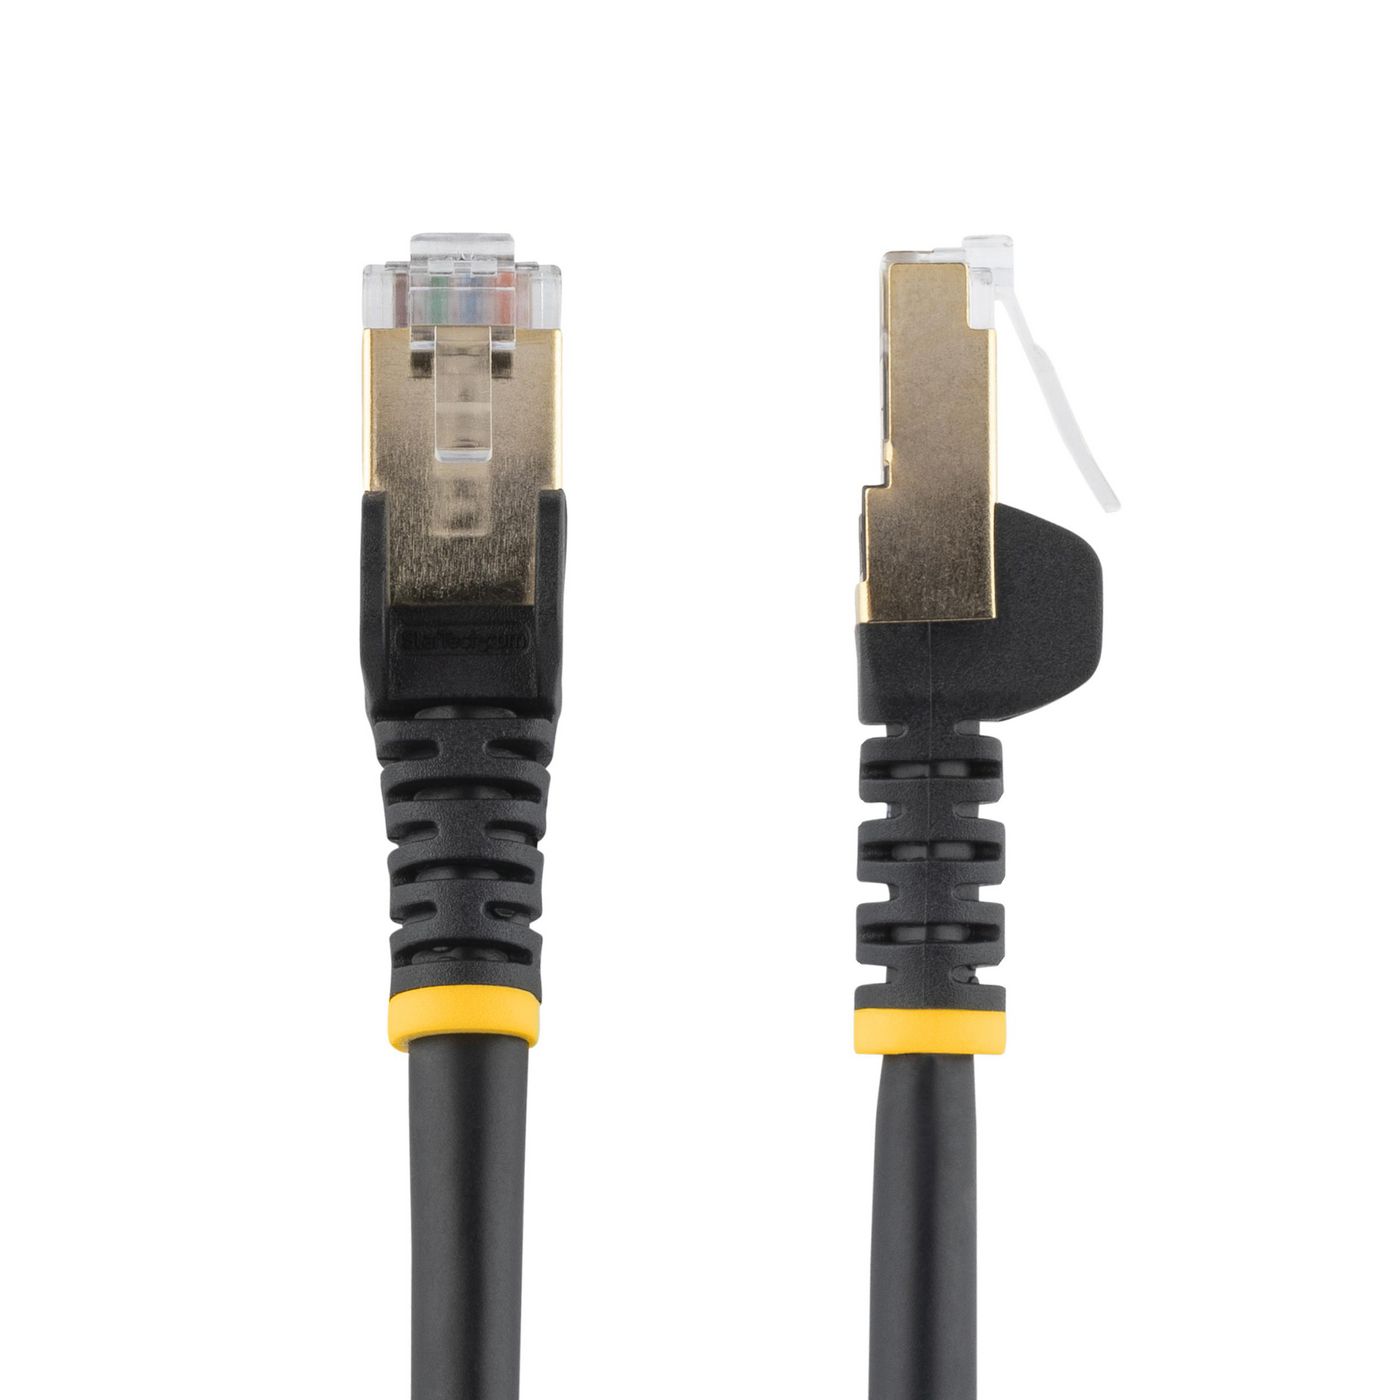 STARTECH.COM 0,5m Cat6a Ethernet Kabel - geschirmt (STP) - Cat6a Netzwerkkabel - Cat6a Patchkabel -